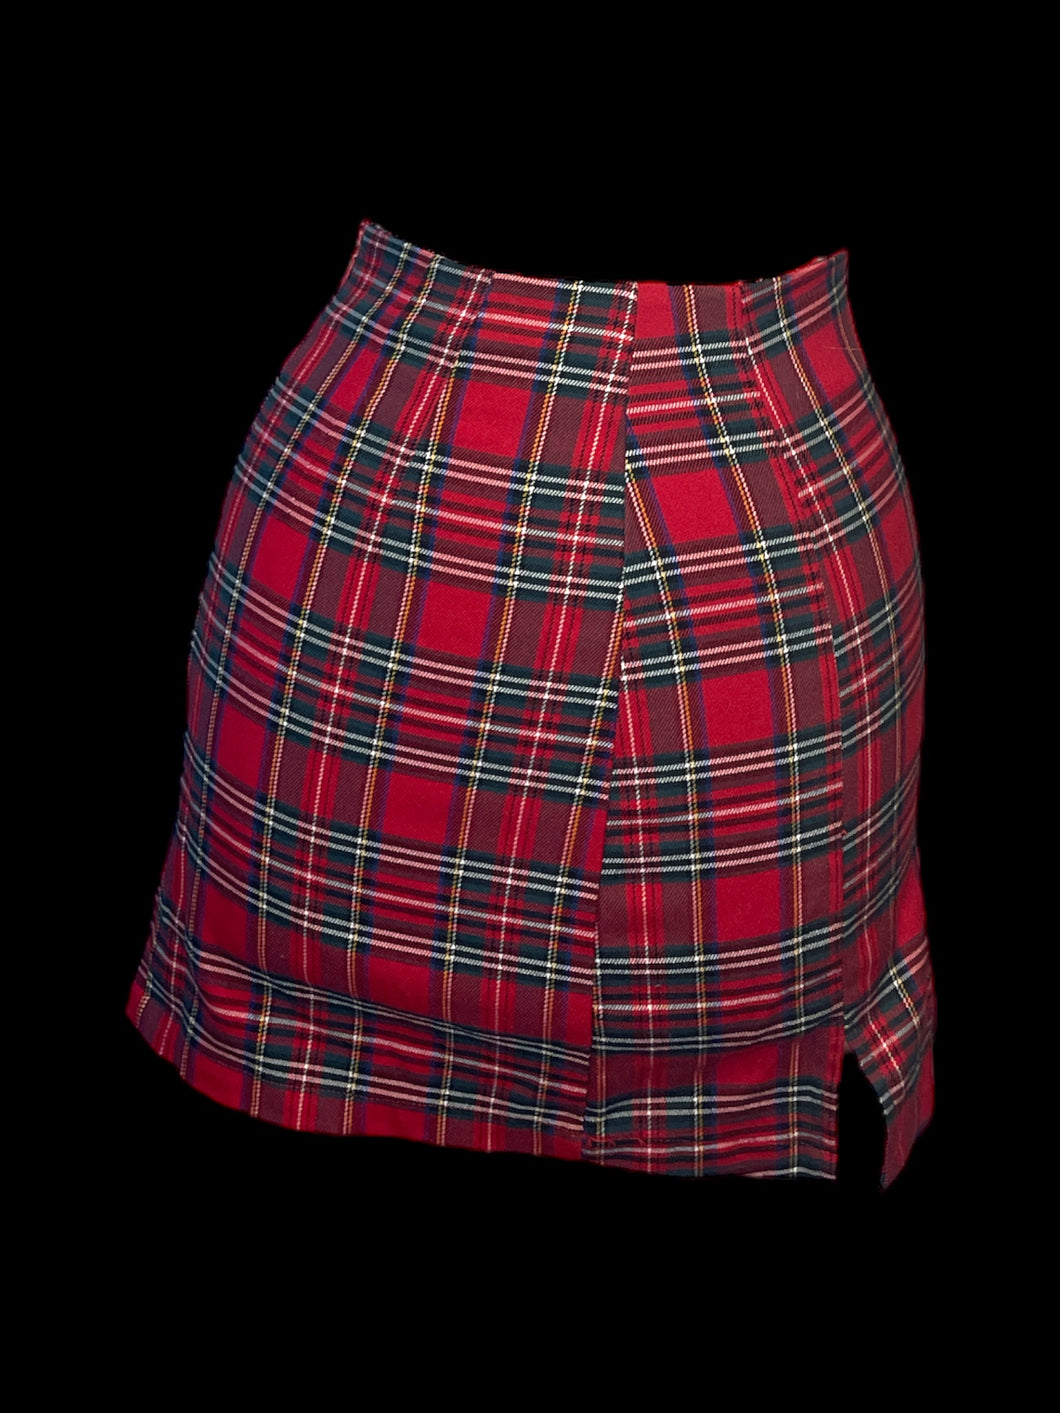 XXS Red & green plaid skirt w/ slit hem, & zipper closure